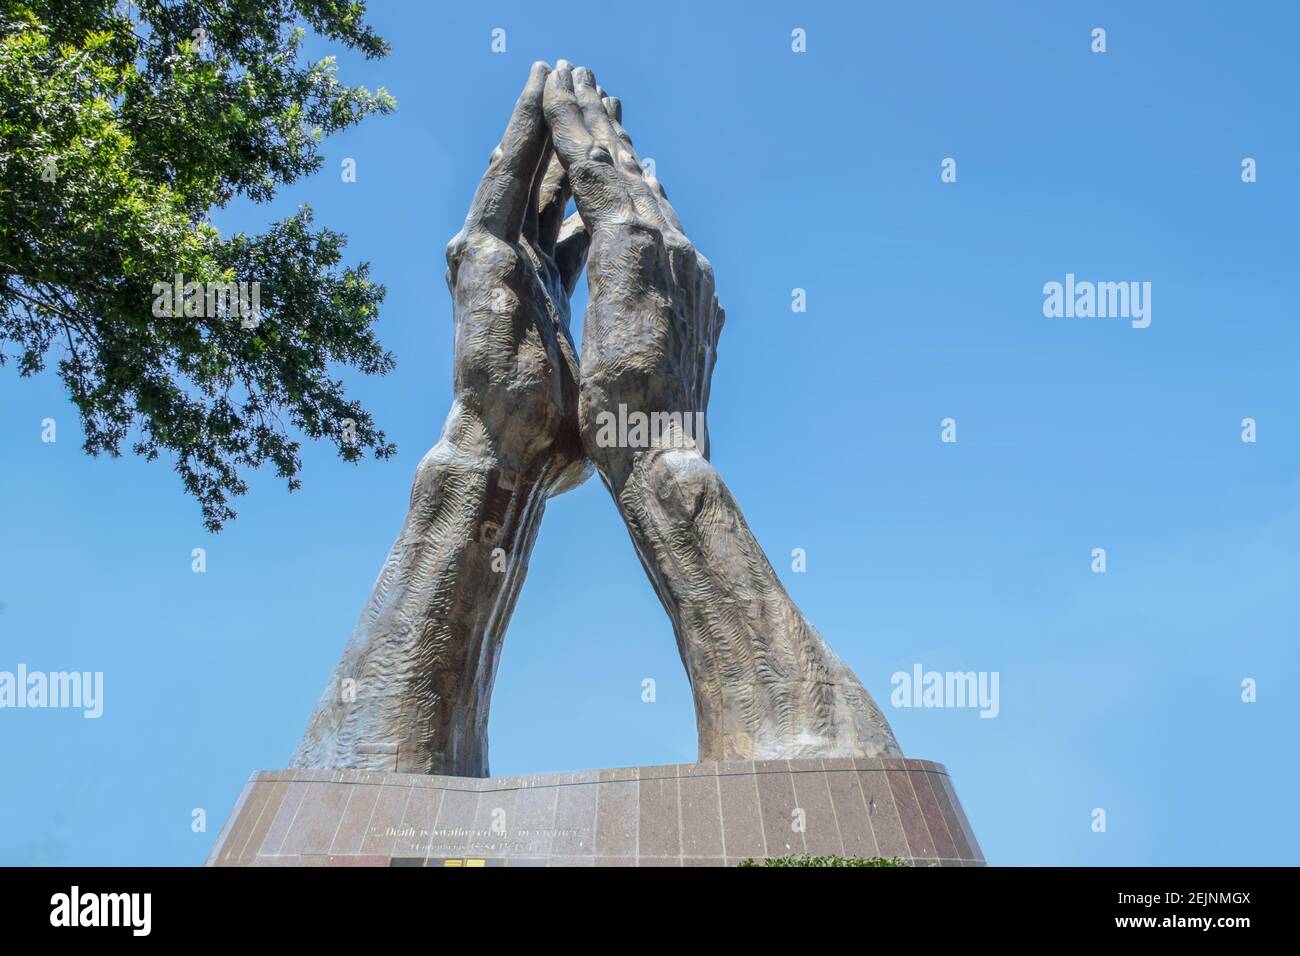 06-11-2020 Tulsa USA - riesige Gebetshänden-Statue bei Oral Roberts University - liest Tod wird in Sieg verschluckt - gegen blauen Himmel mit Baum Stockfoto